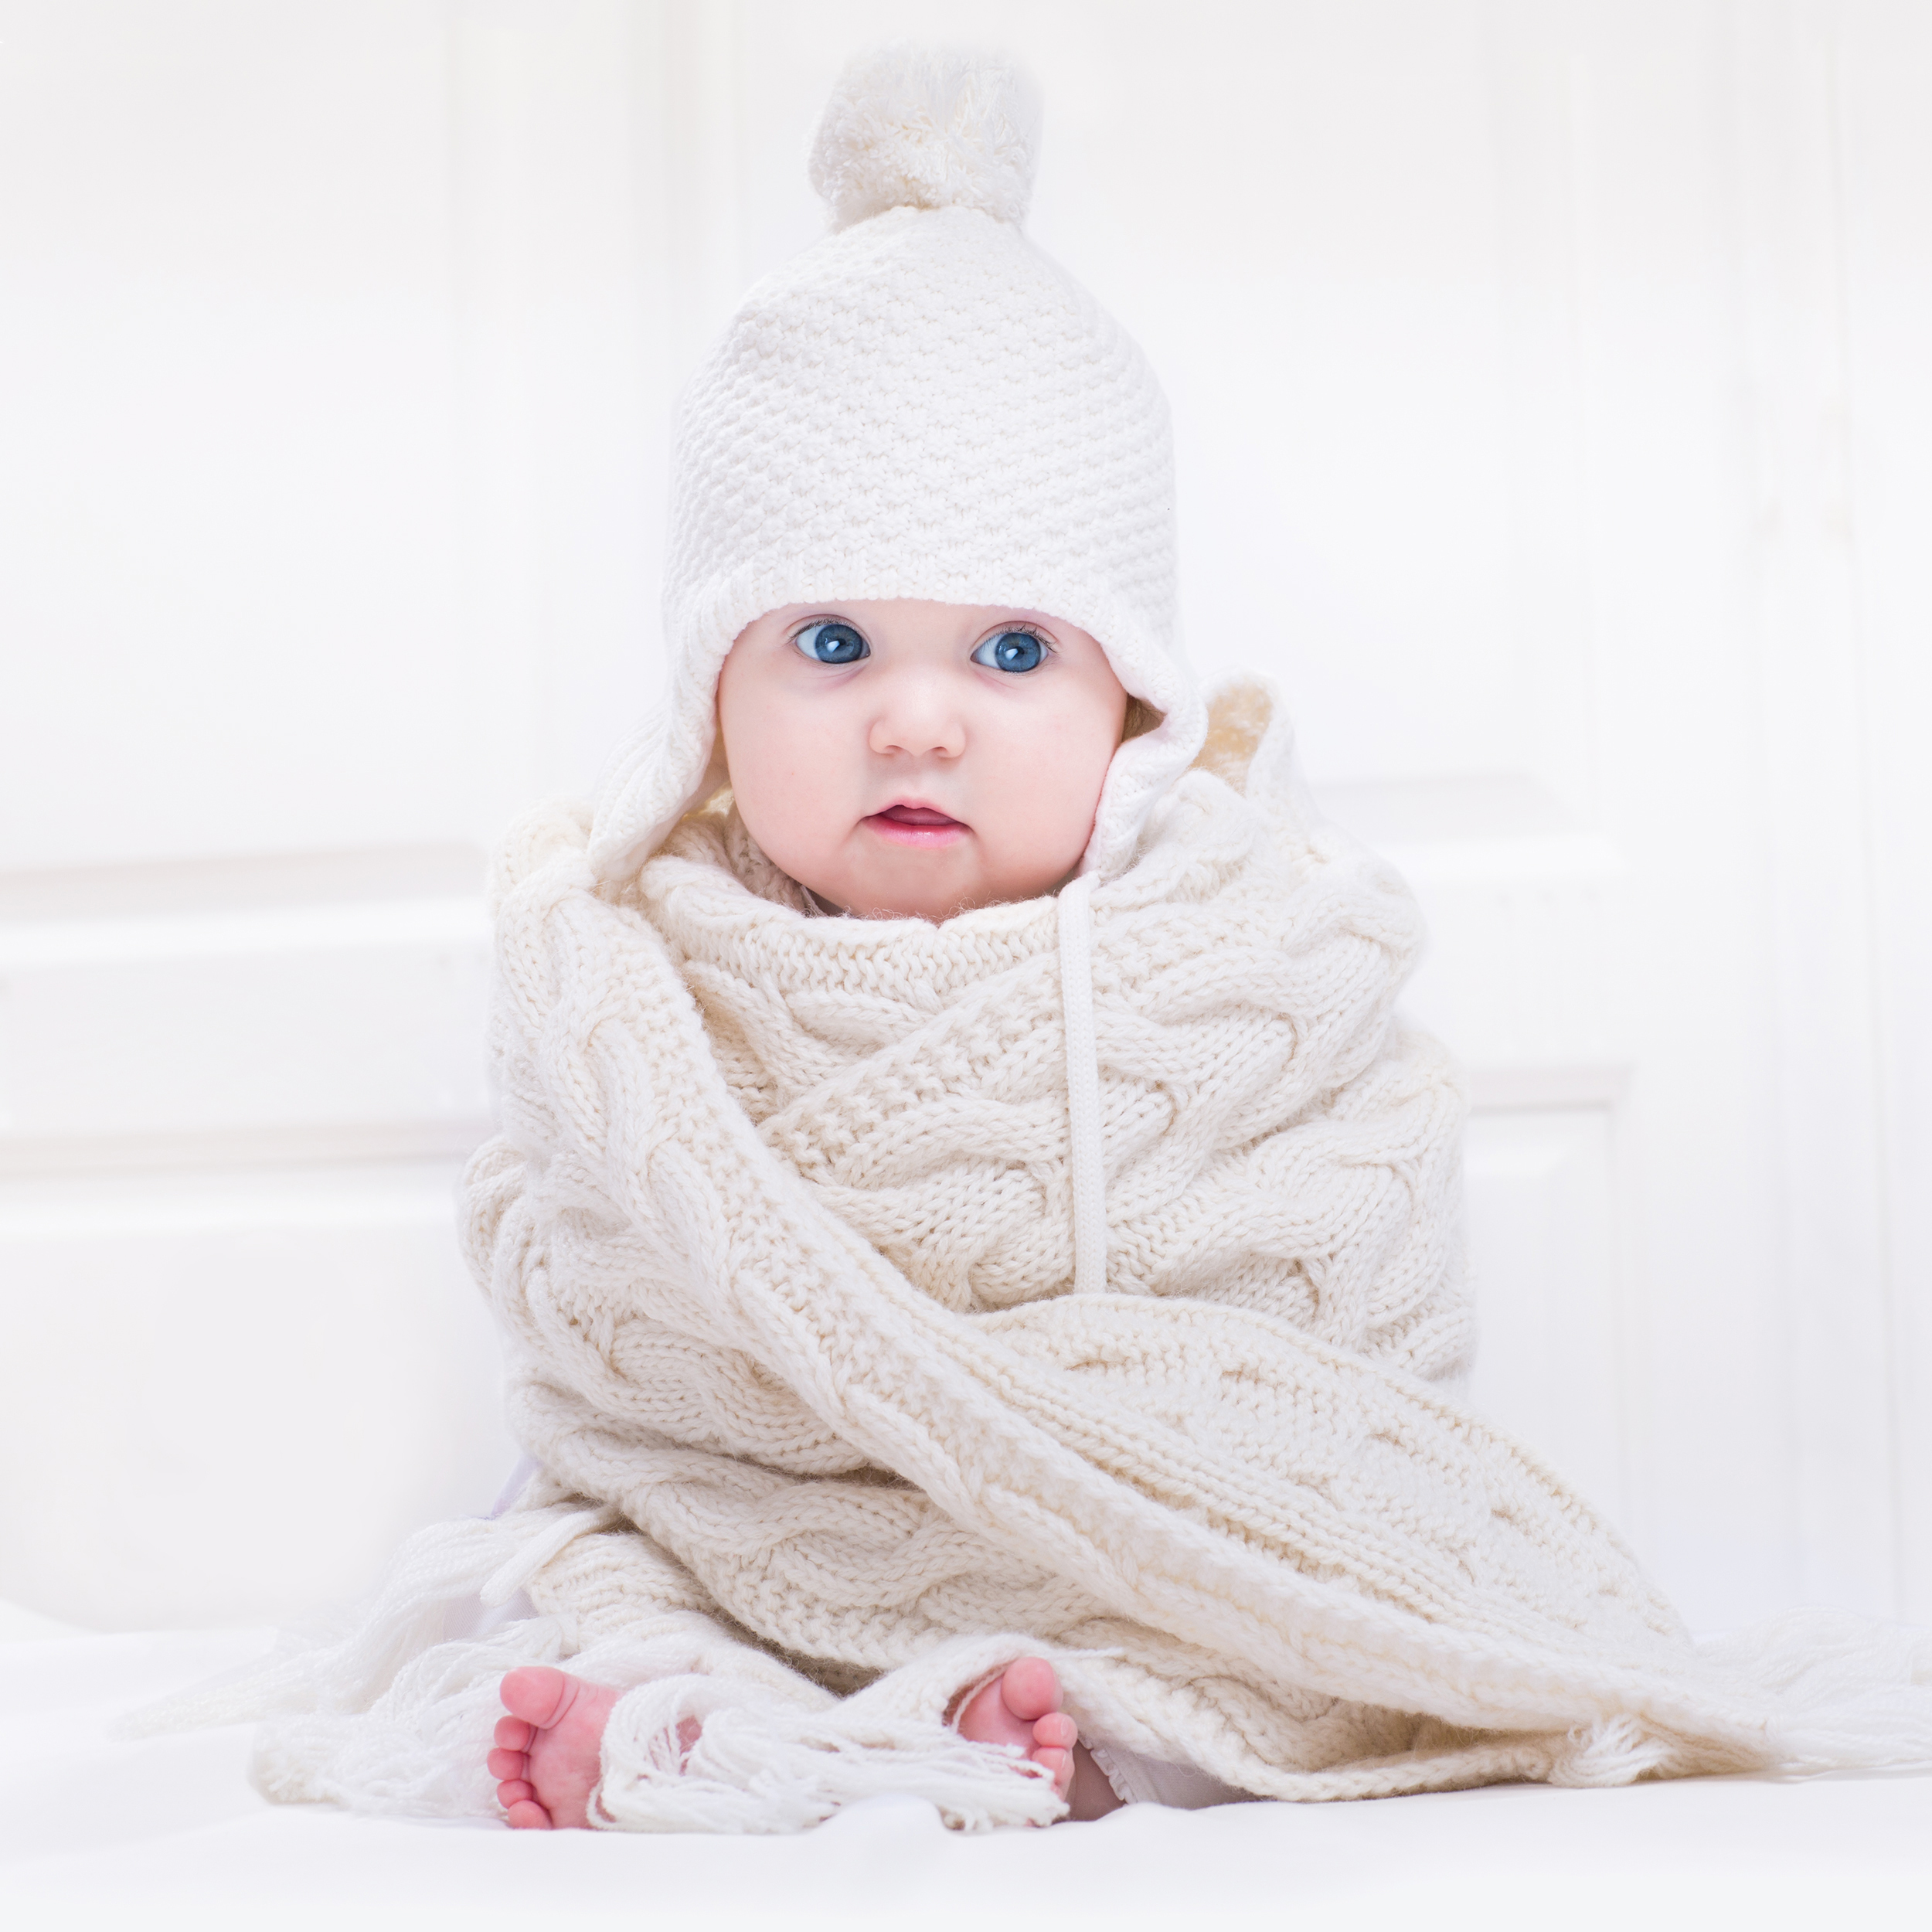 Comment protéger la peau fragile de bébé l'hiver?